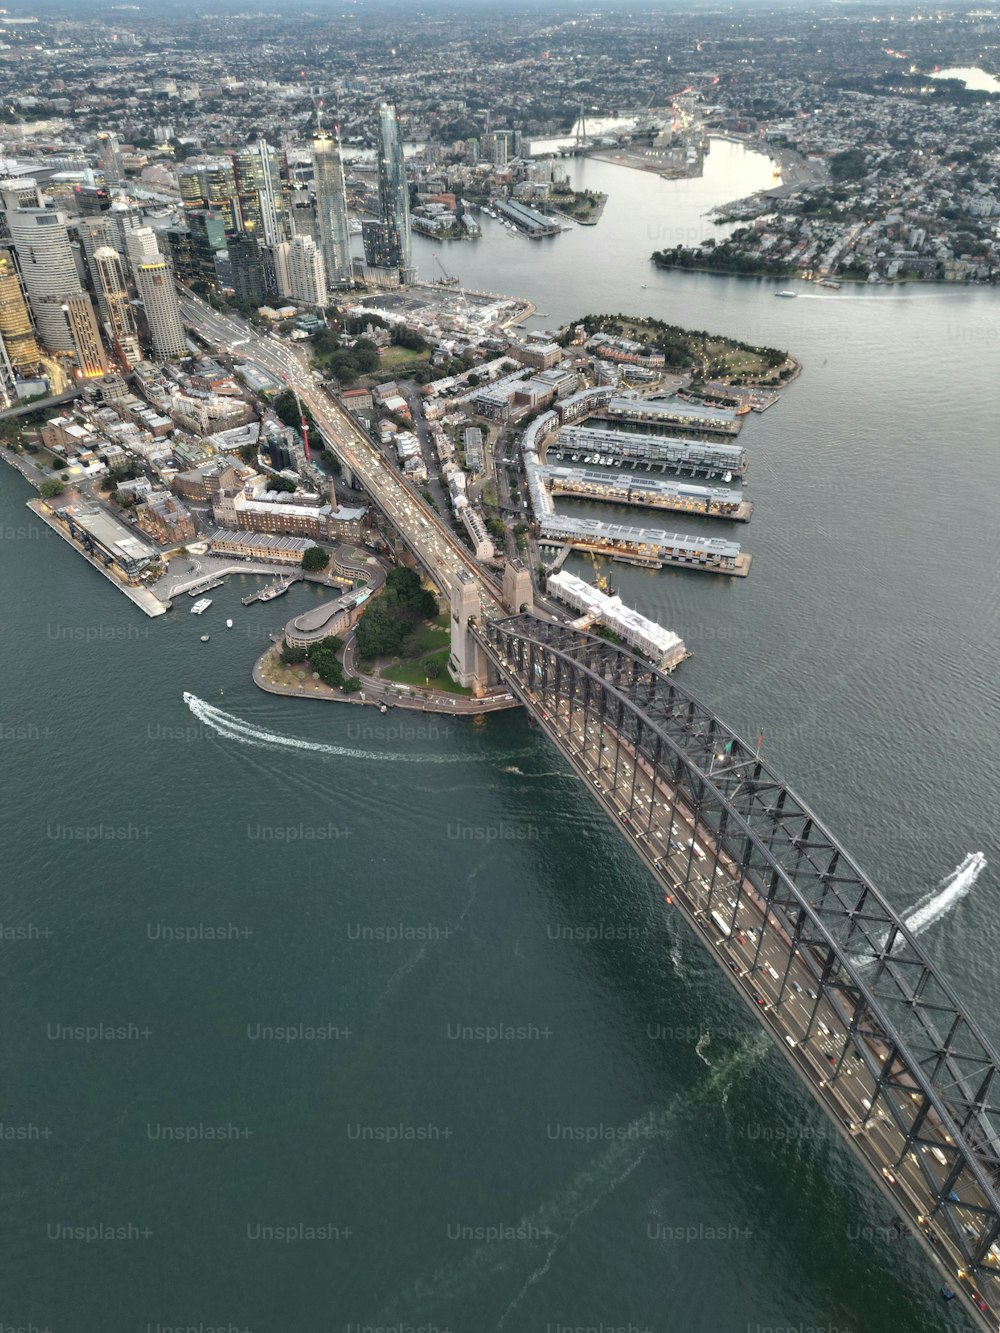 Una vista aérea vertical del puente de la bahía de Sídney y un paisaje urbano circundante